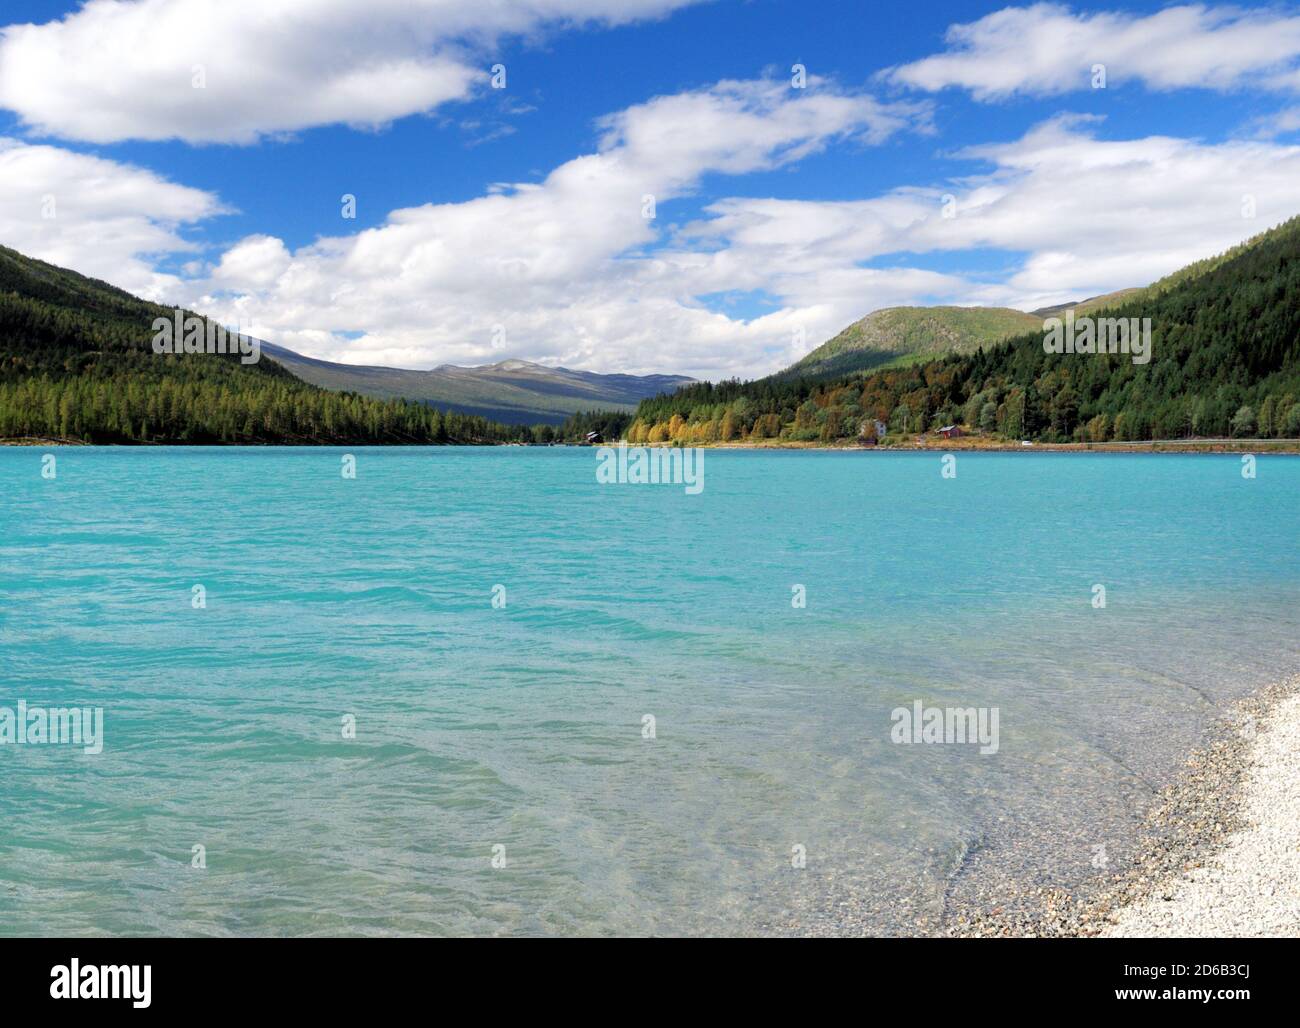 Bellissima acqua turchese del lago Heggjebottvatnet con Monte Honnsrove in Lo sfondo DI UN giorno estivo soleggiato con un chiaro Cielo blu e alcune nuvole Foto Stock